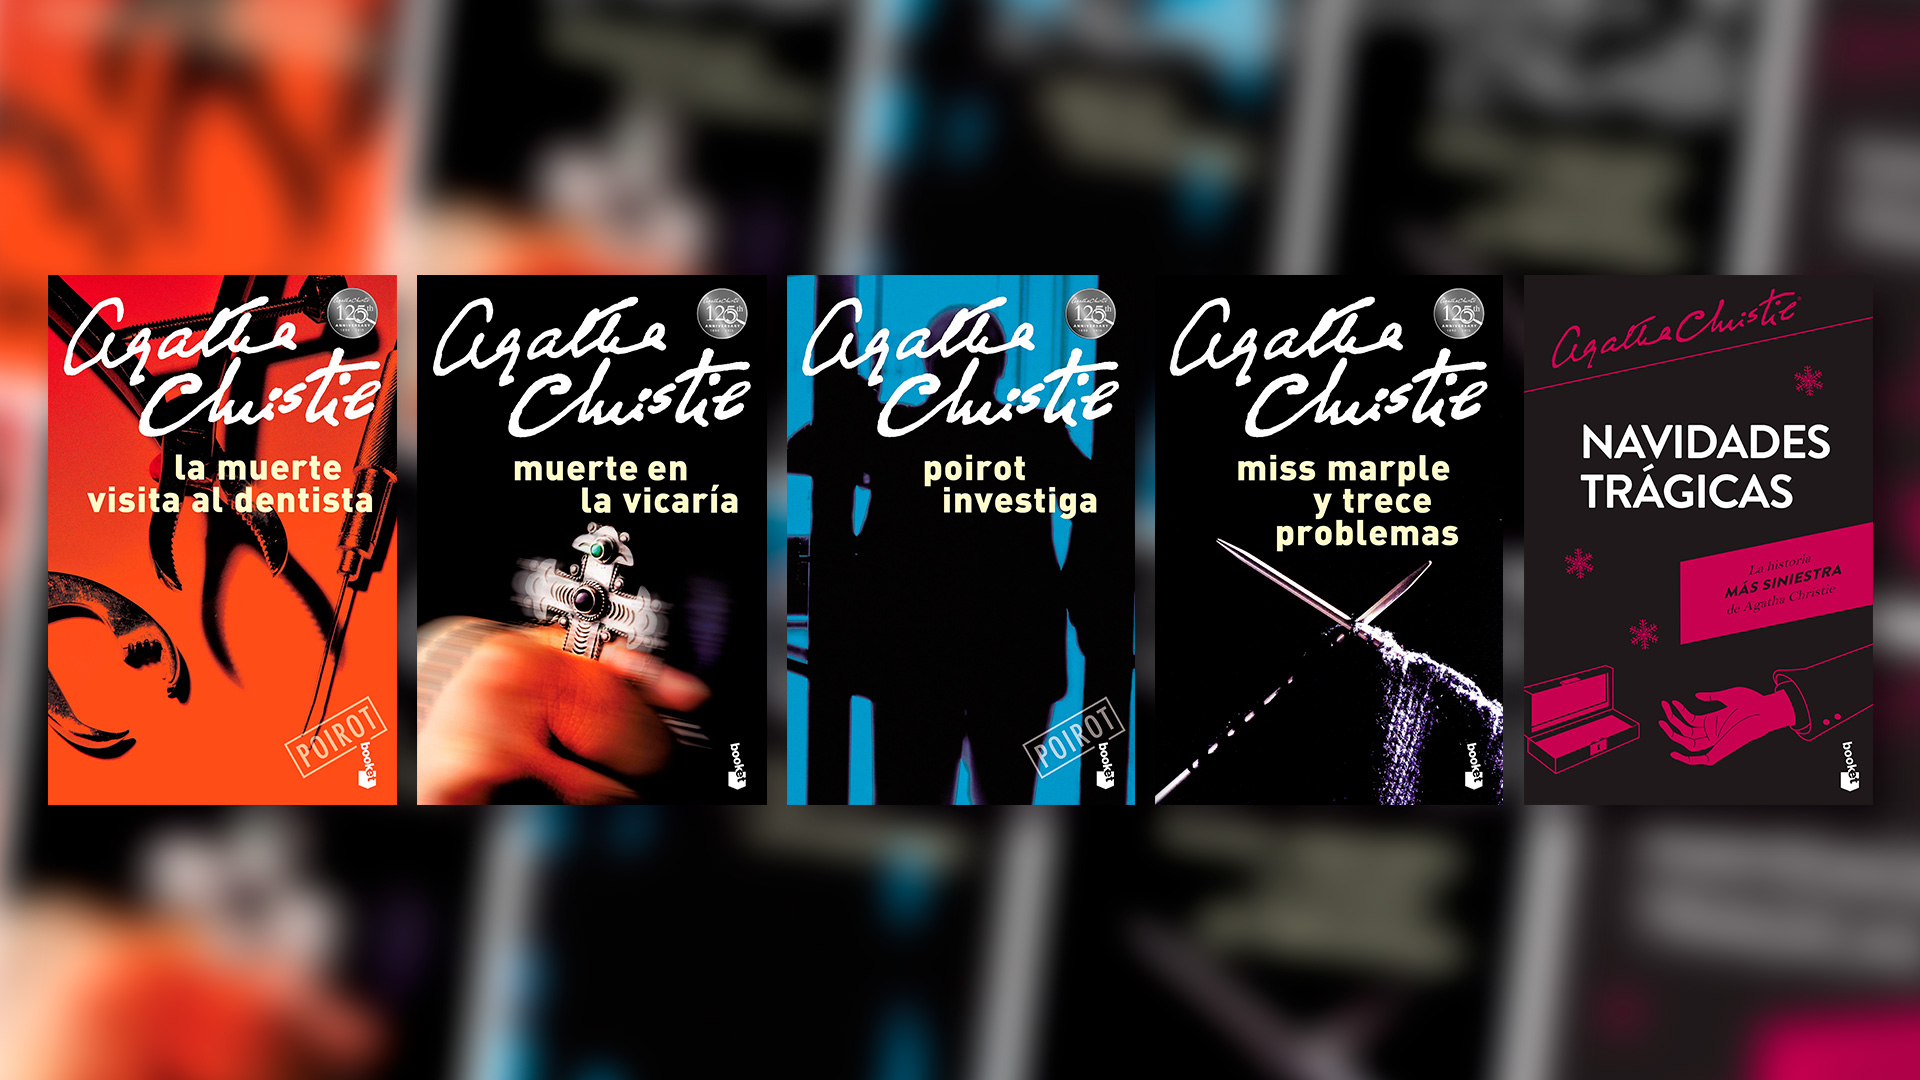 Pasajes de algunas novelas de Agatha Christie como "Muerte en el Nilo" y "Misterio en el Caribe" fueron eliminados para adecuarse a la corrección política de las nuevas generaciones. 